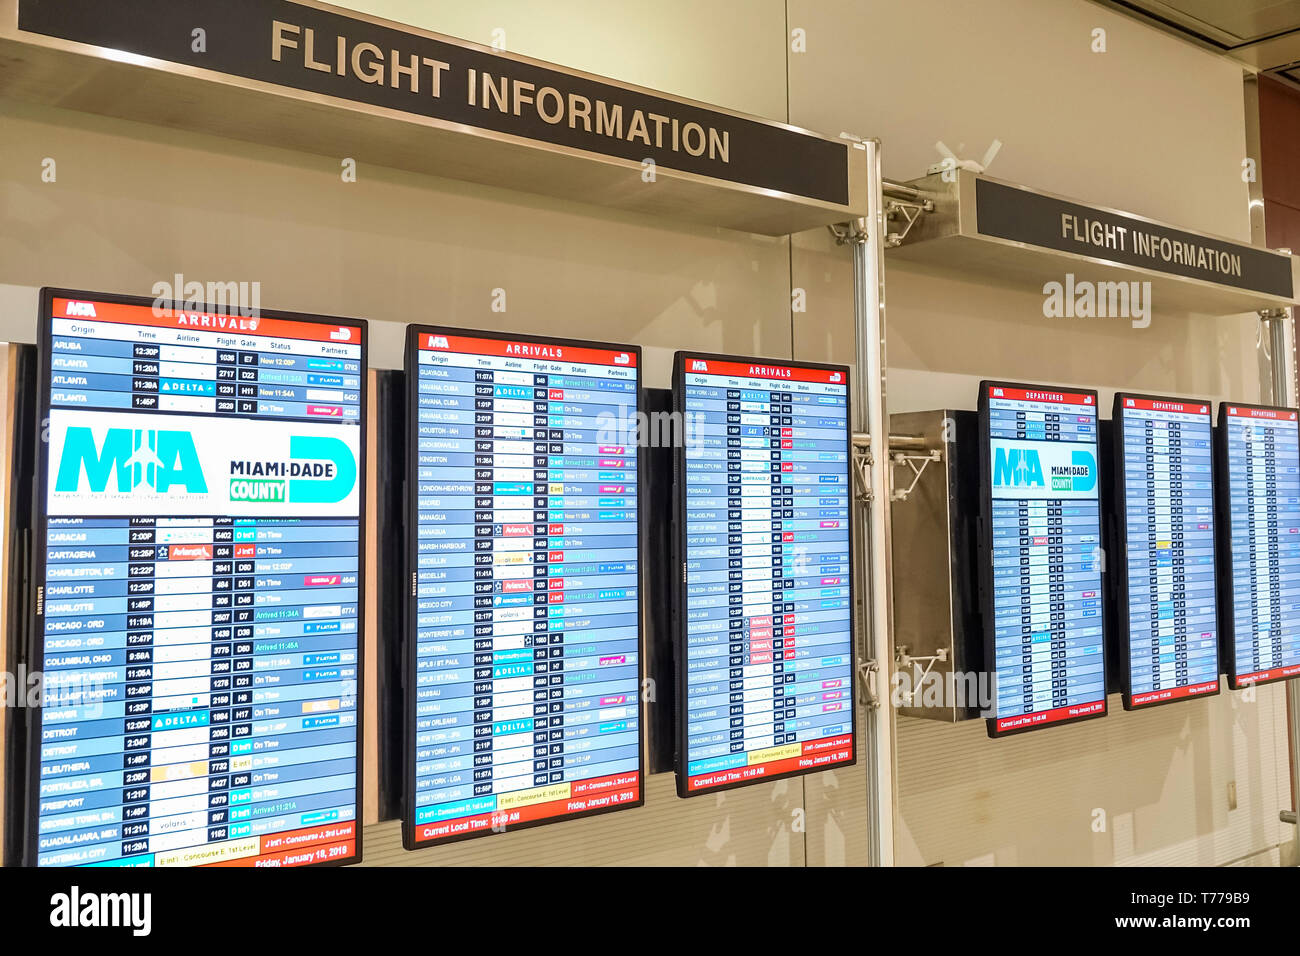 Miami Florida,International Airport mia,informazioni sui voli,schede informative digitali sui voli,arrivi,FL190118010 Foto Stock